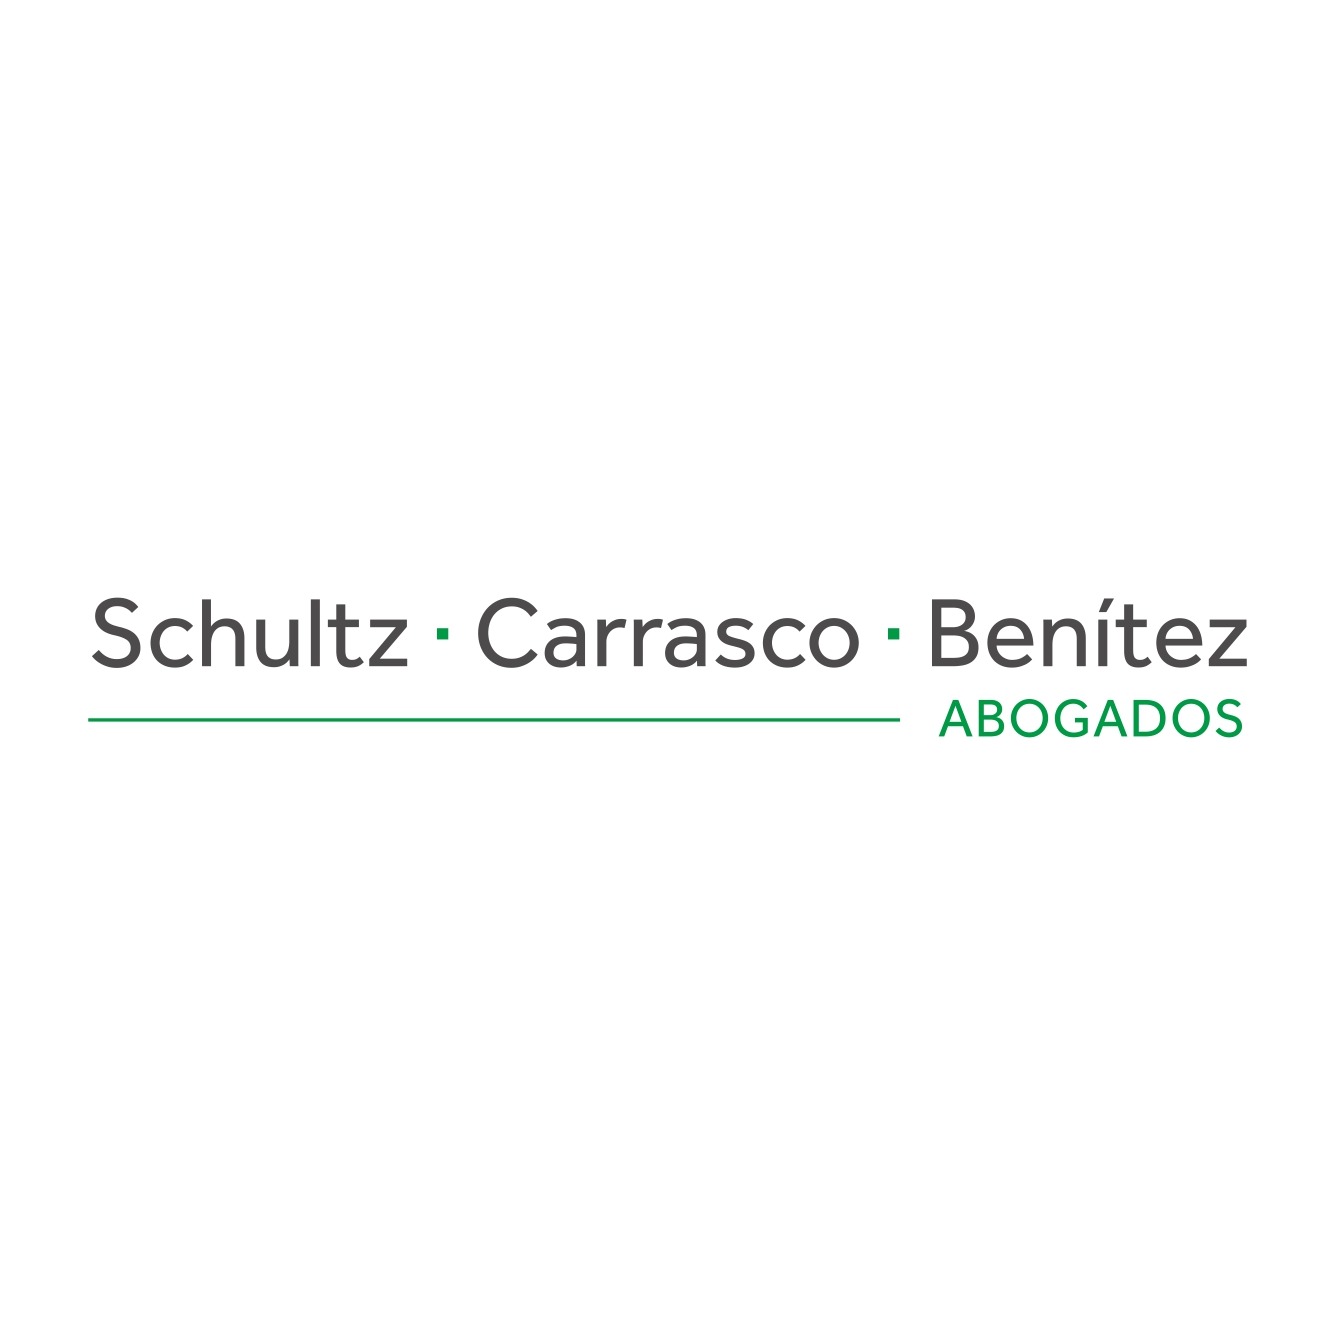 Schultz Carrasco Benítez